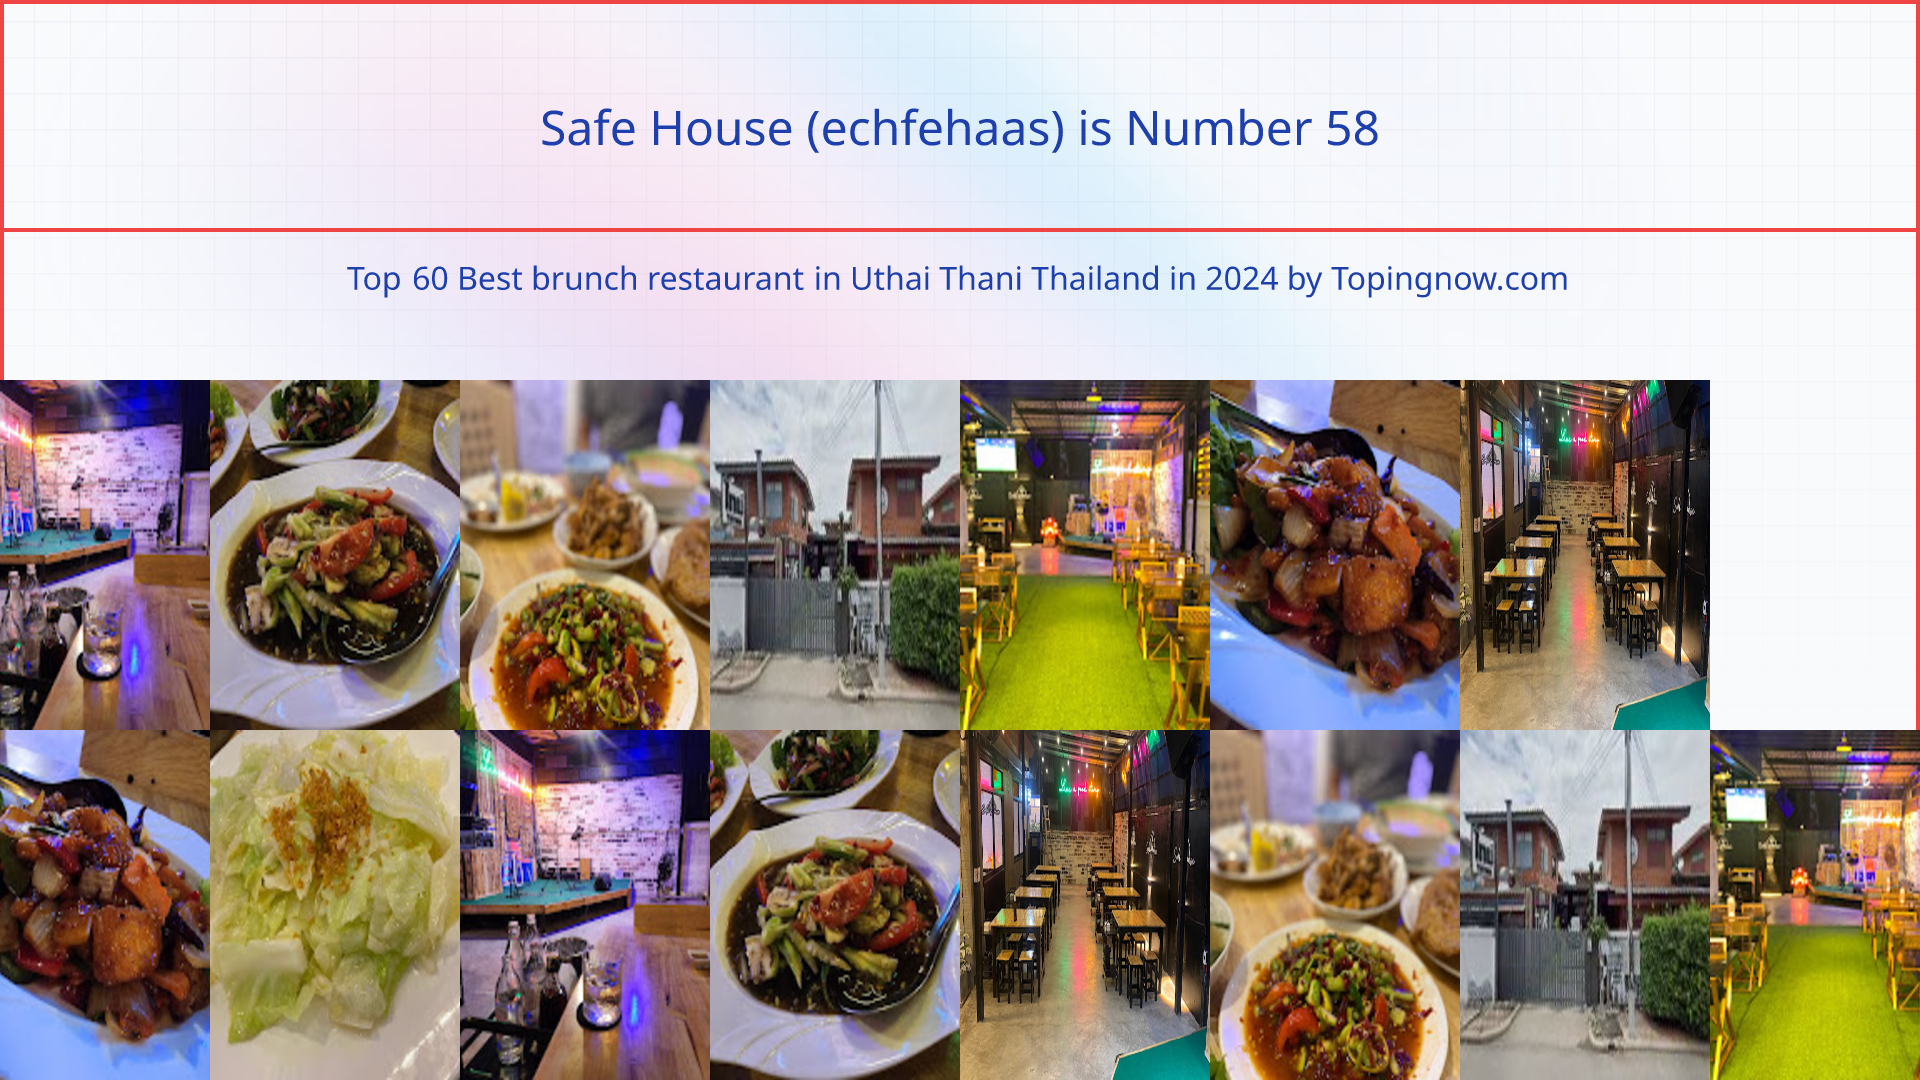 Safe House (echfehaas): Top 60 Best brunch restaurant in Uthai Thani Thailand in 2024